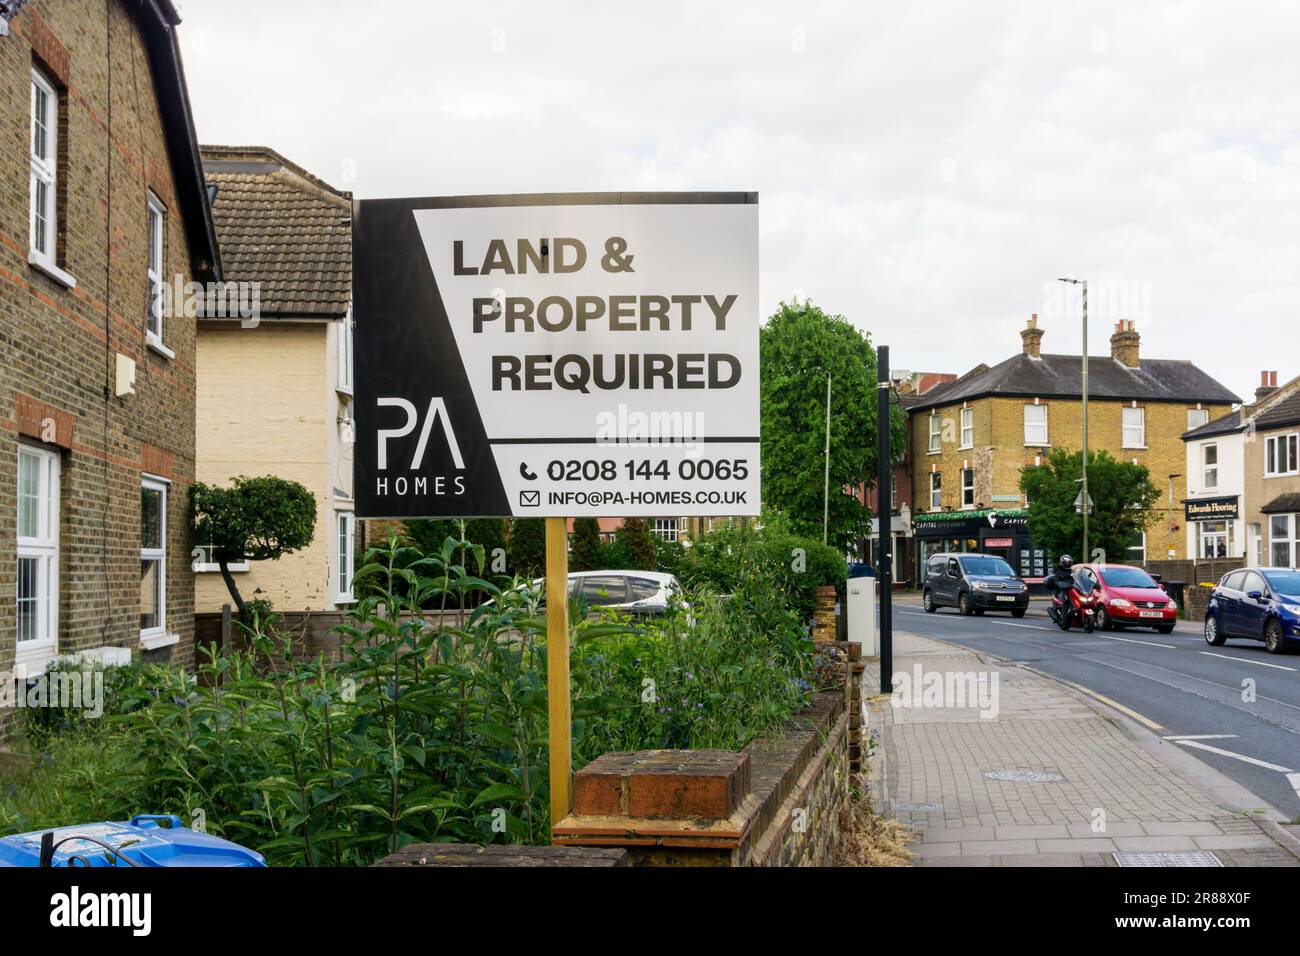 Il consiglio di un agente immobiliare Reading Land & Property è richiesto a Shortlands, South London. Foto Stock